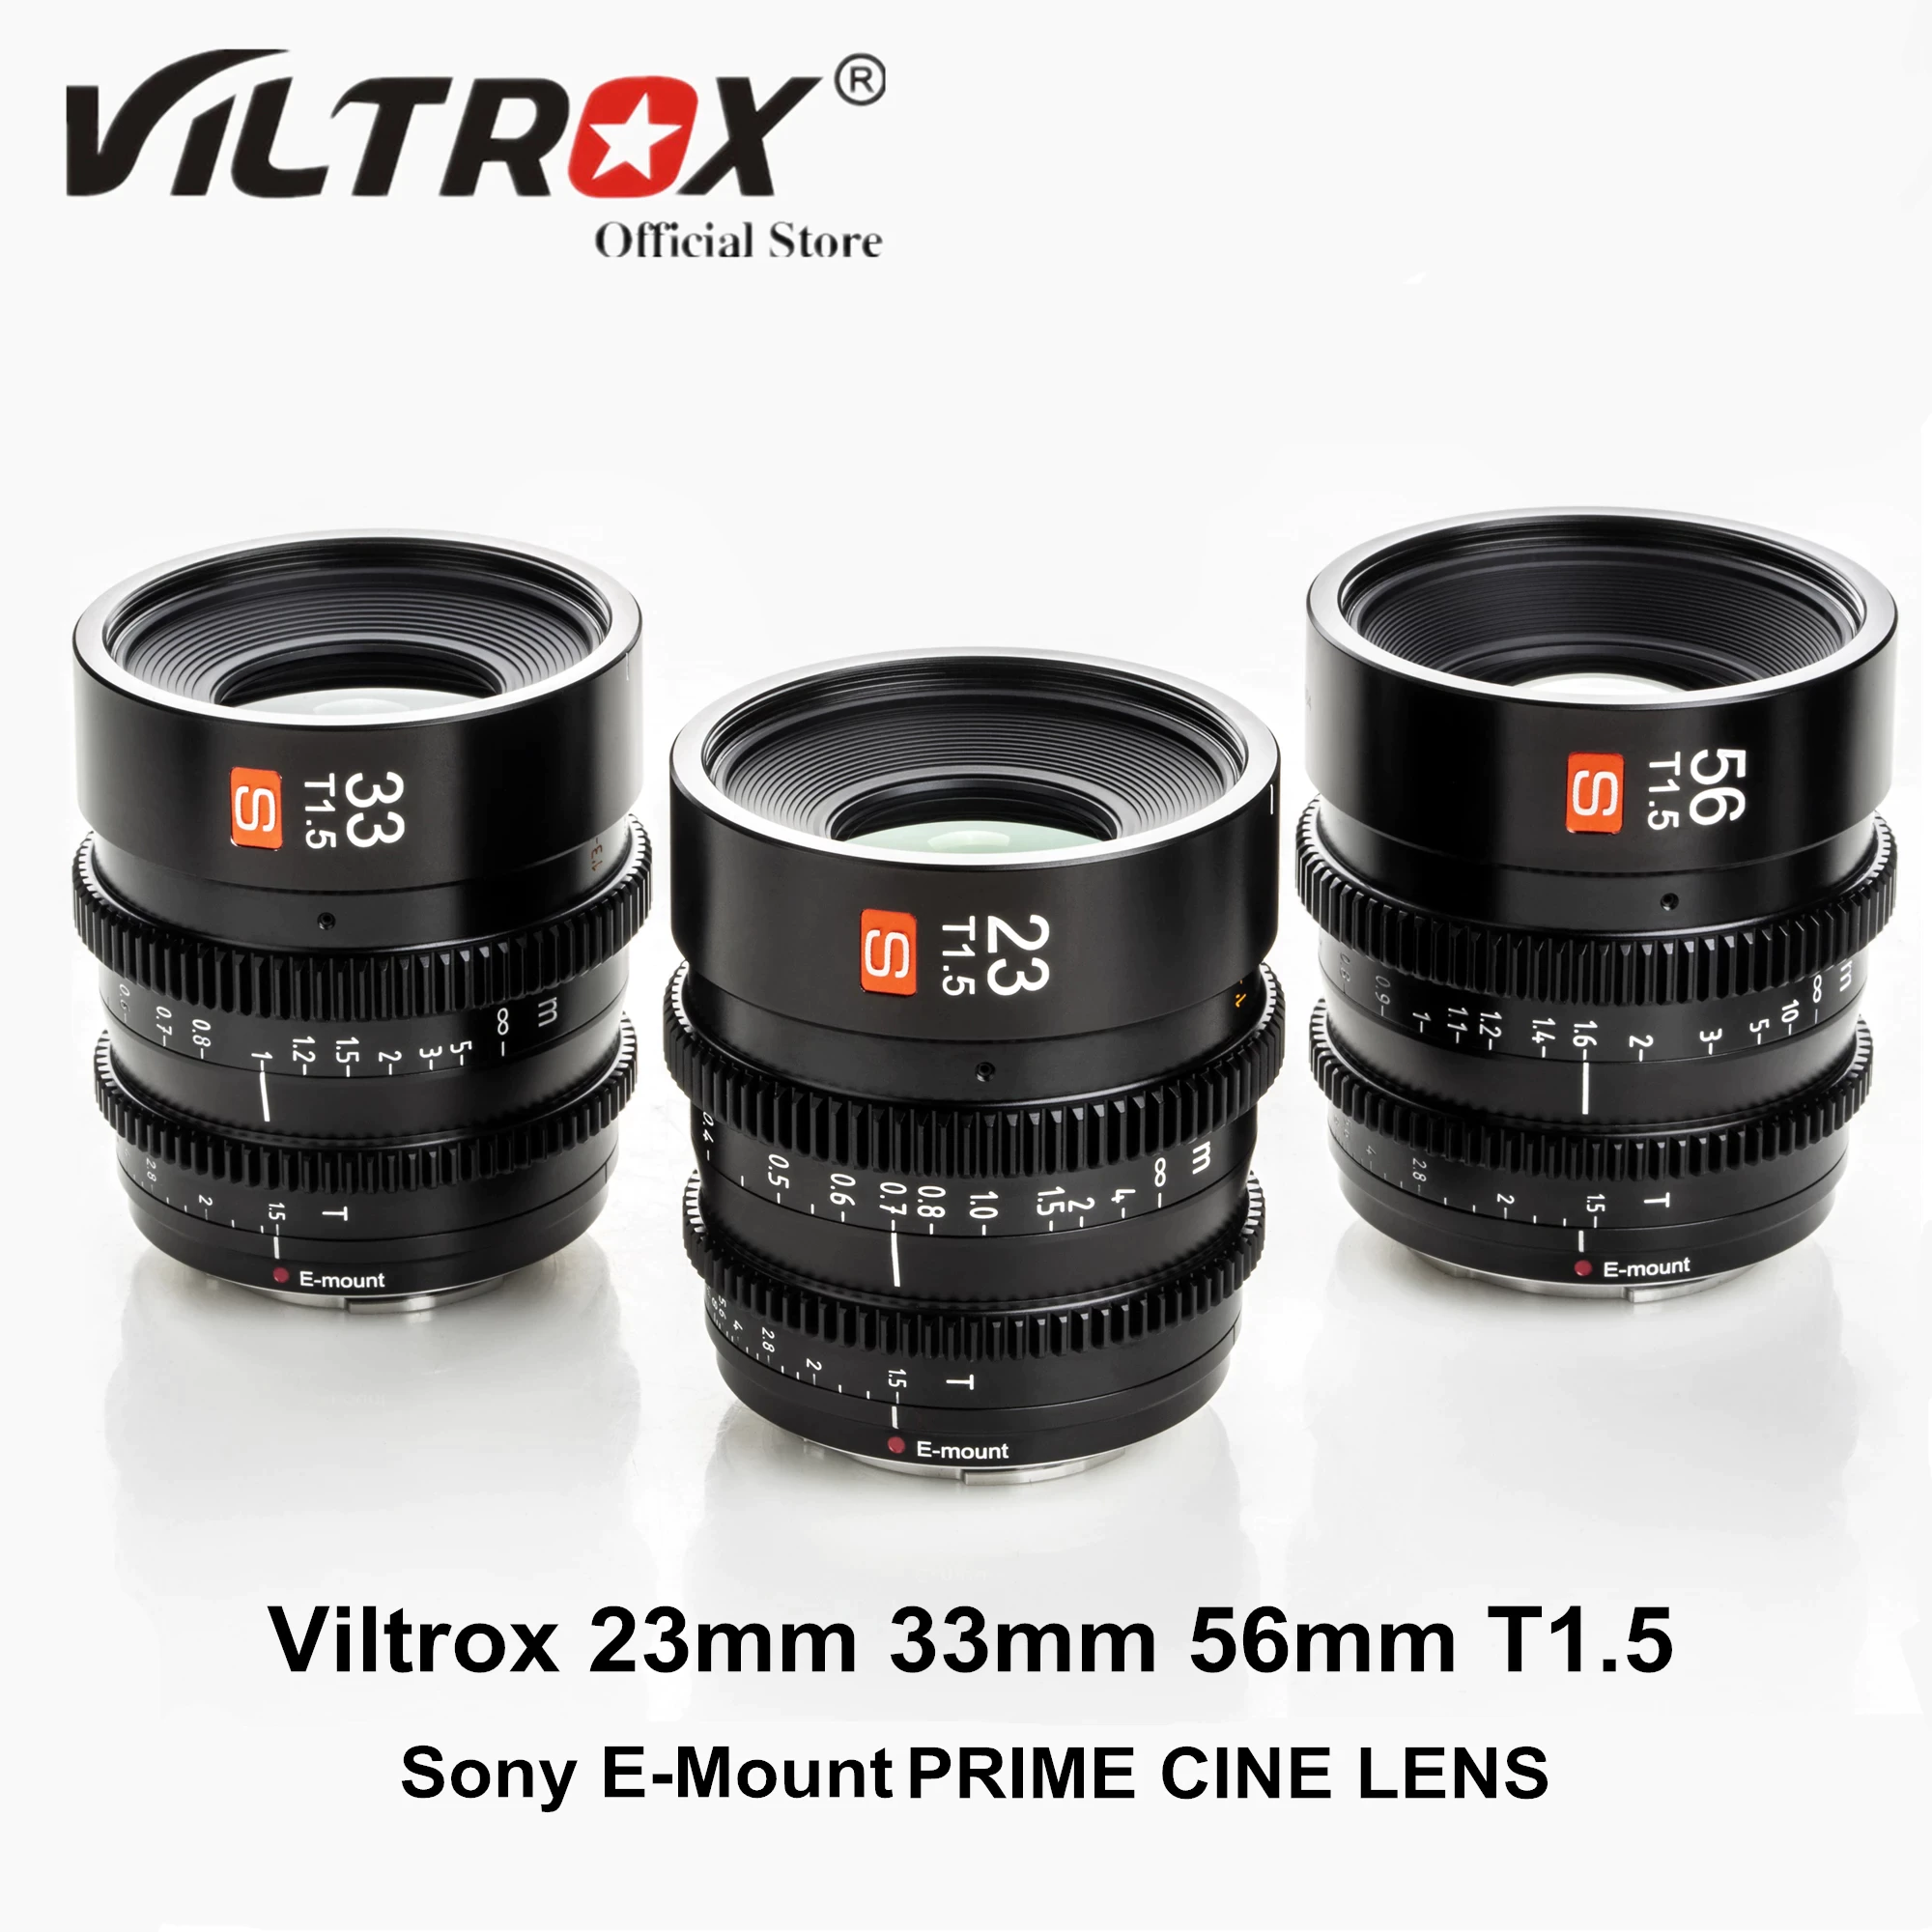 Viltrox 23mm 33mm 56mm T1.5 Cinema Objektiv Große Blende Manueller Fokus Prime Mini Cine Lens Geringe Verzerrung Filmen Vlogger für Sony E Mount Kamer